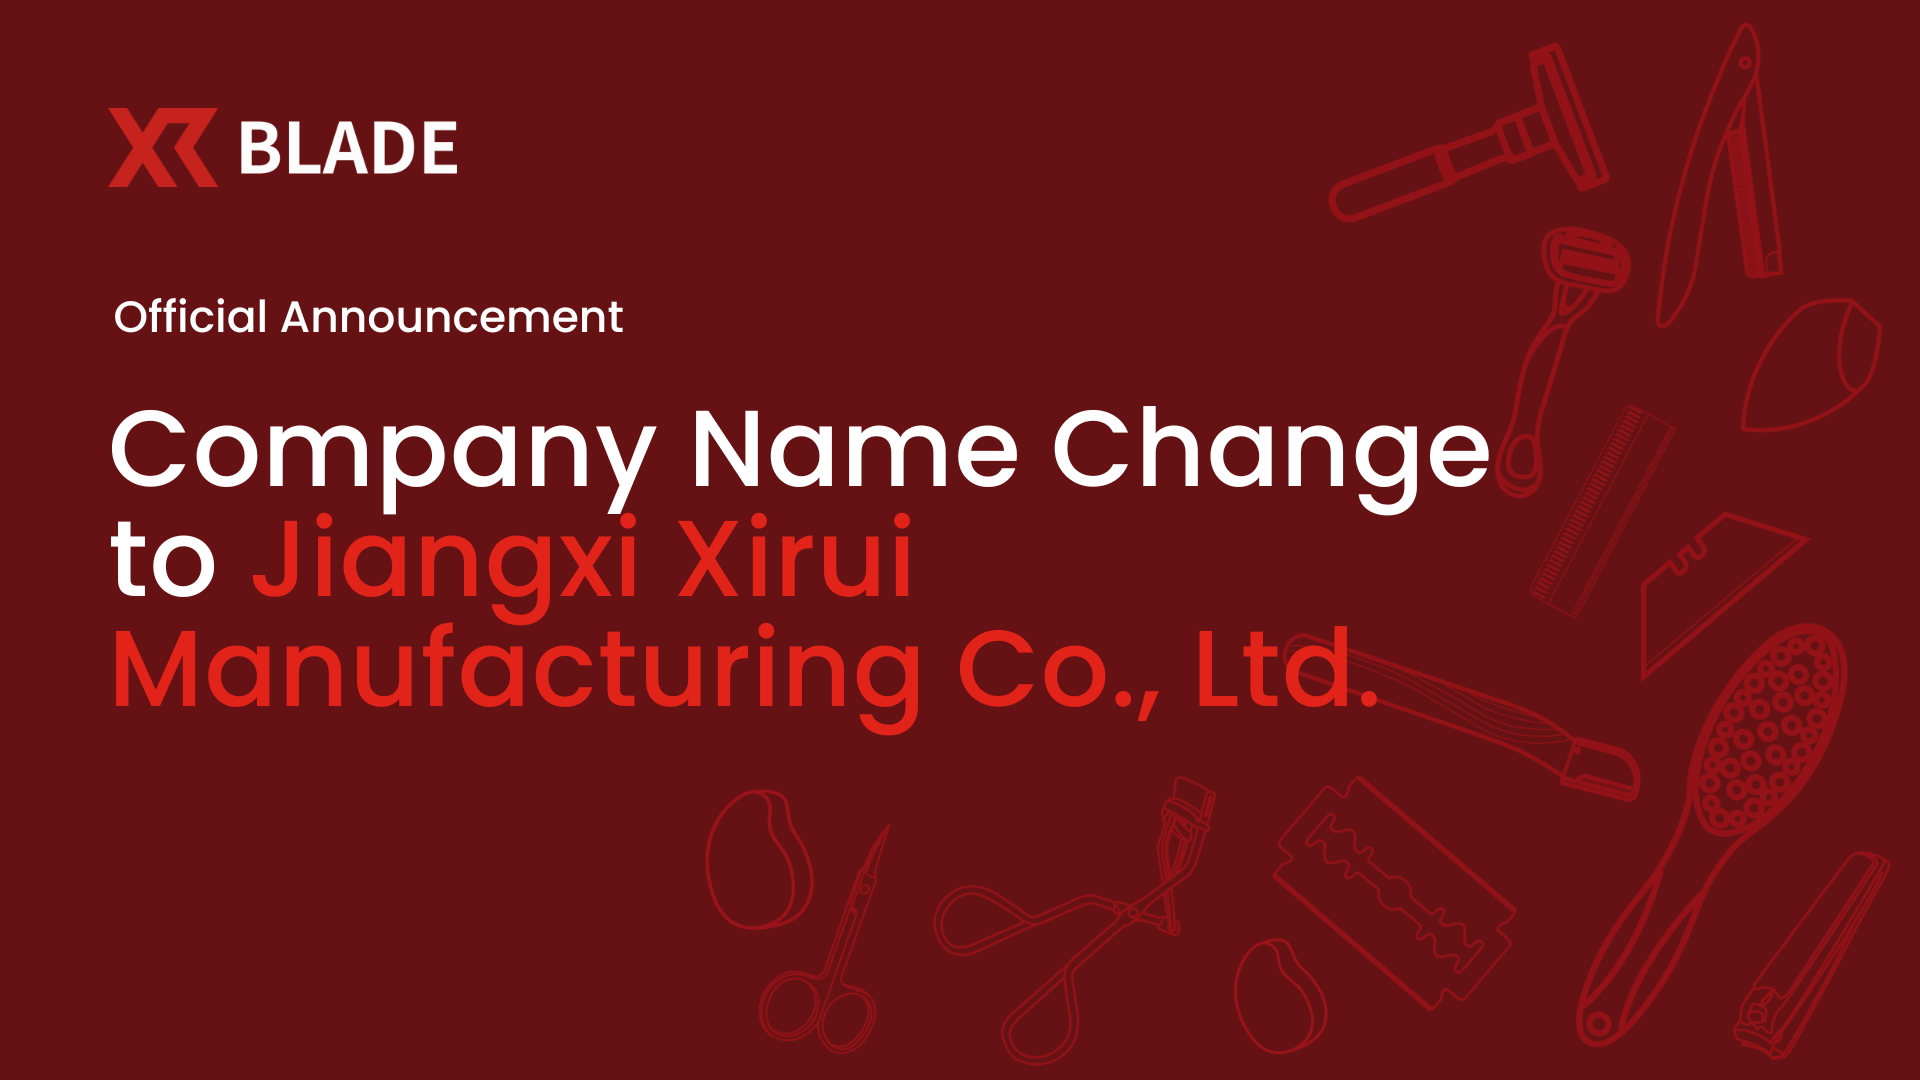 Announces Official Company Name Change to Jiangxi Xirui Manufacturing Co., Ltd.